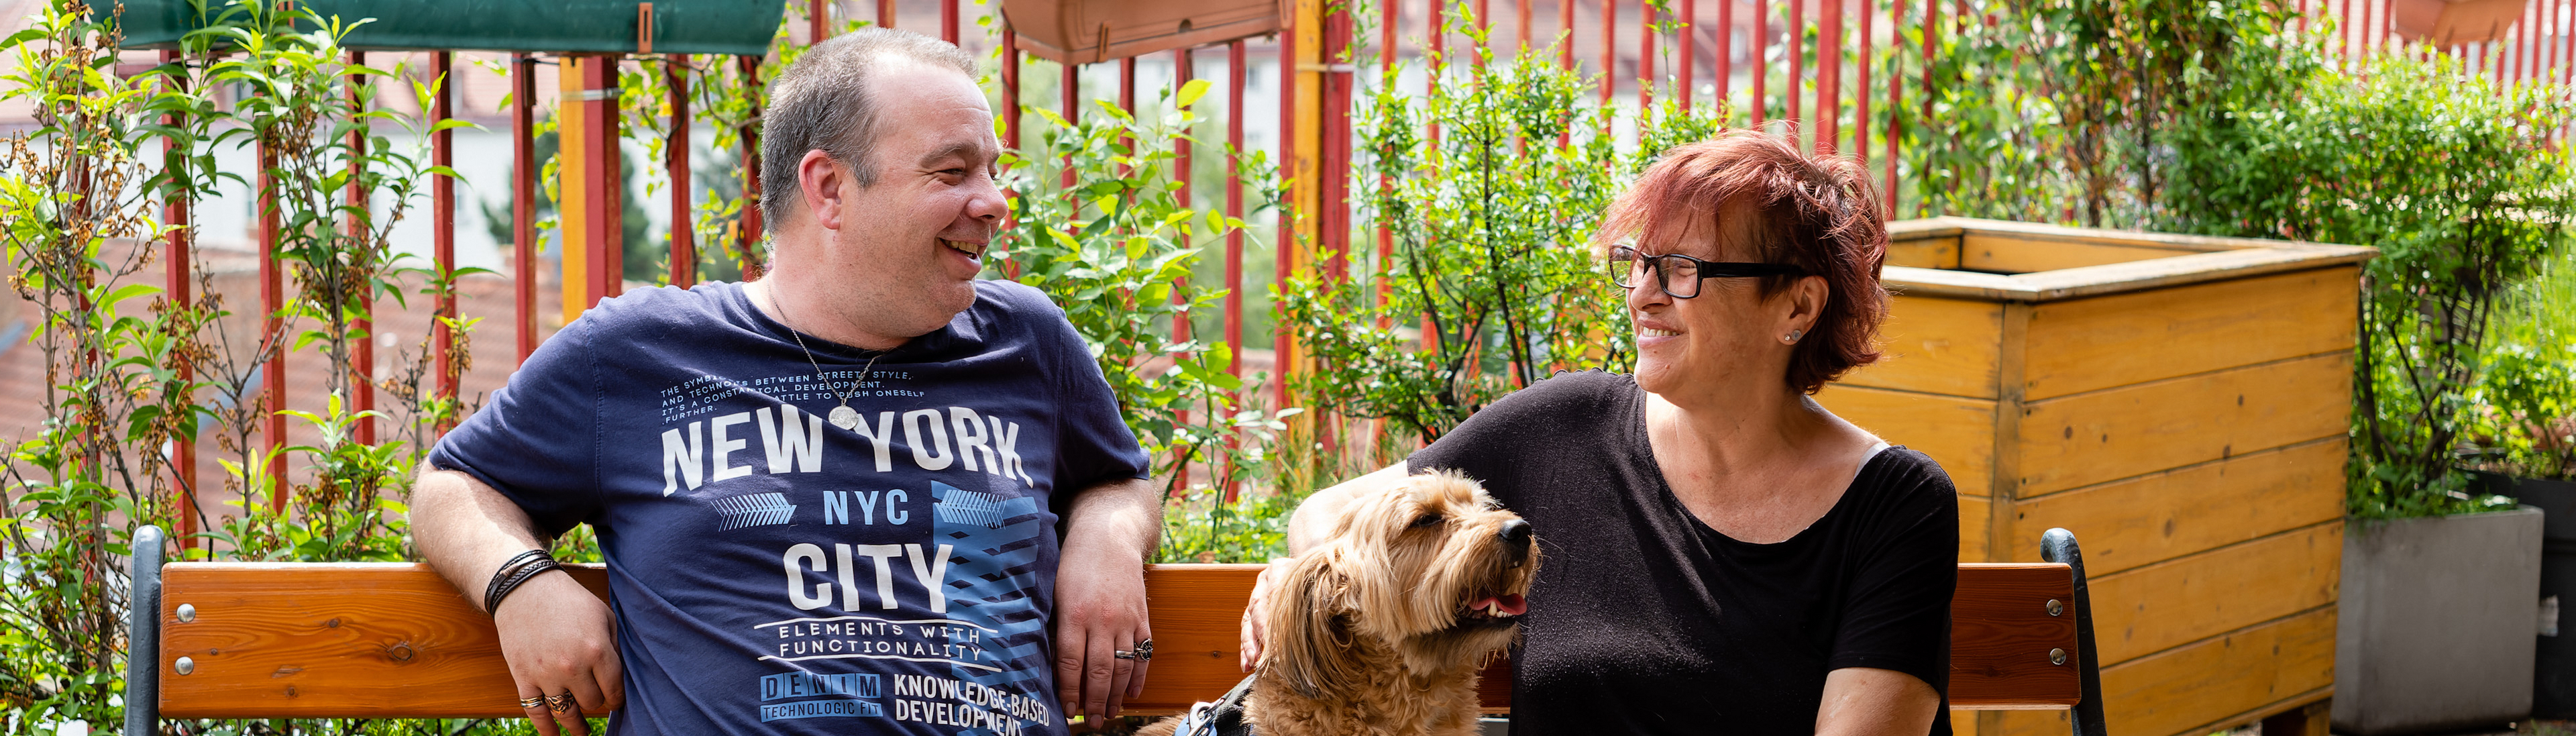 Wohnungslosenhilfe - zwei Bewohner einer Einrichtung sitzen mit Hund auf Bank, auf Terrasse